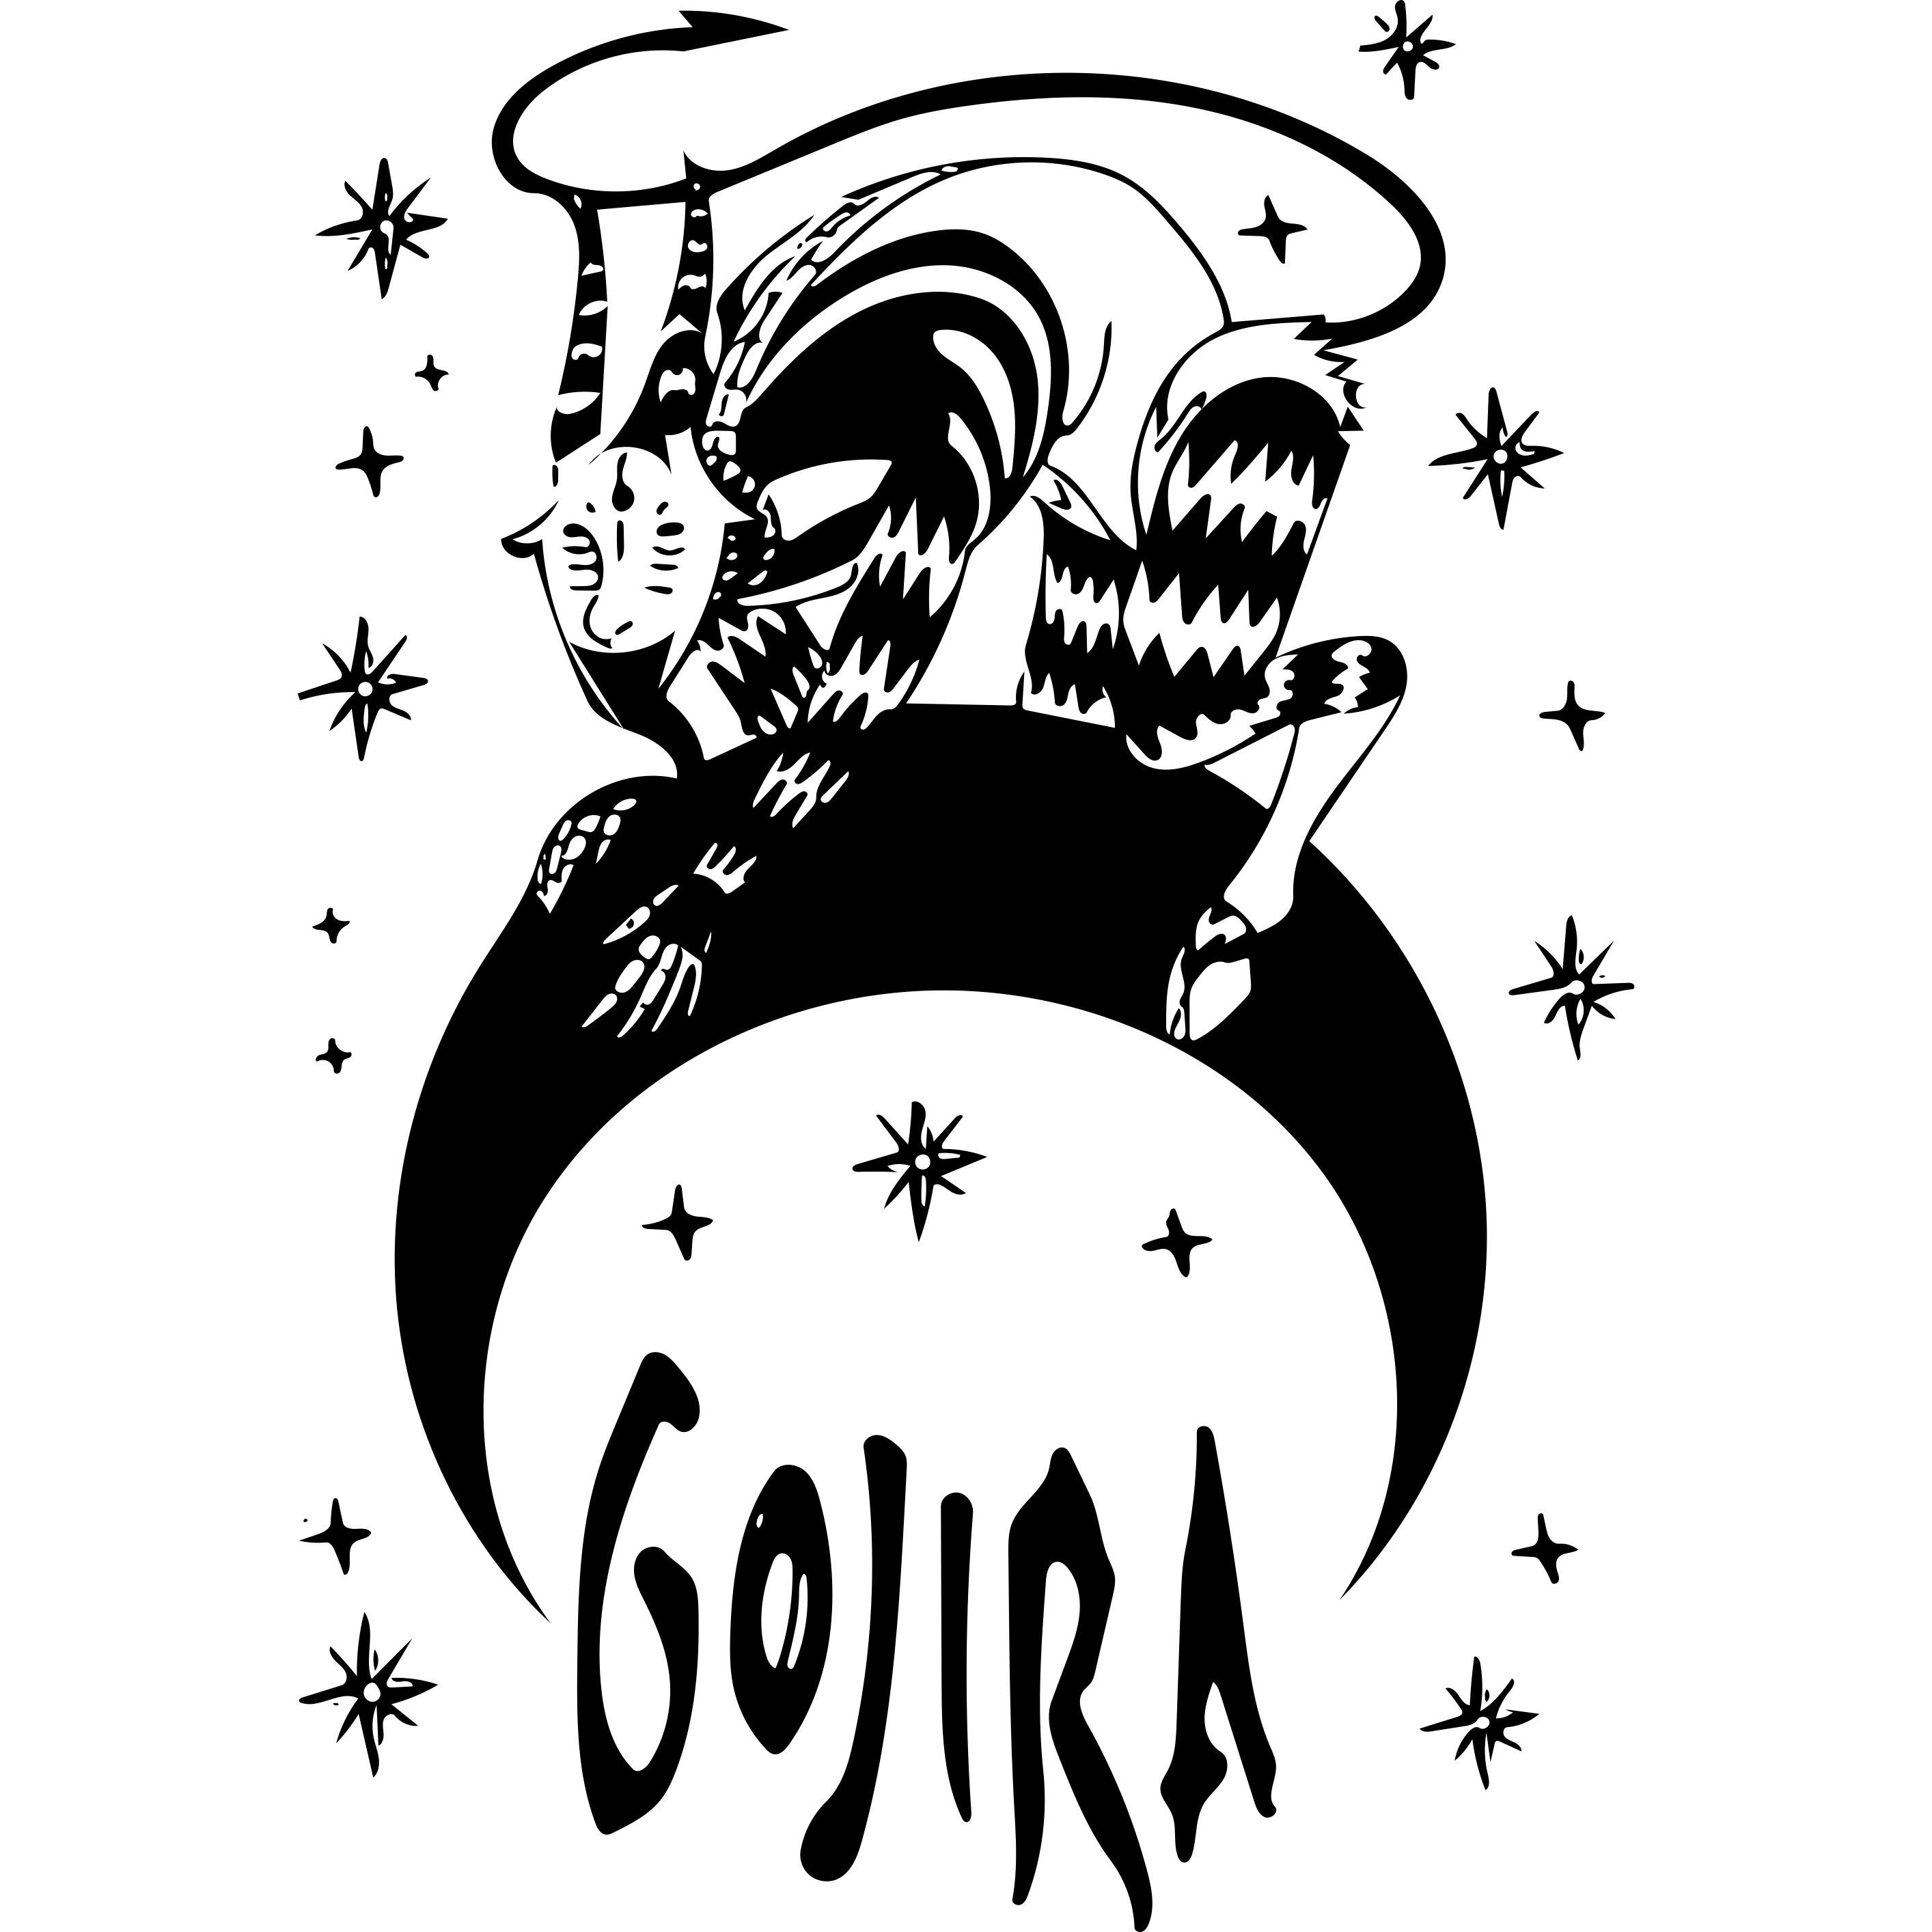 Gojira From Mars To Sirius - HD Wallpaper 